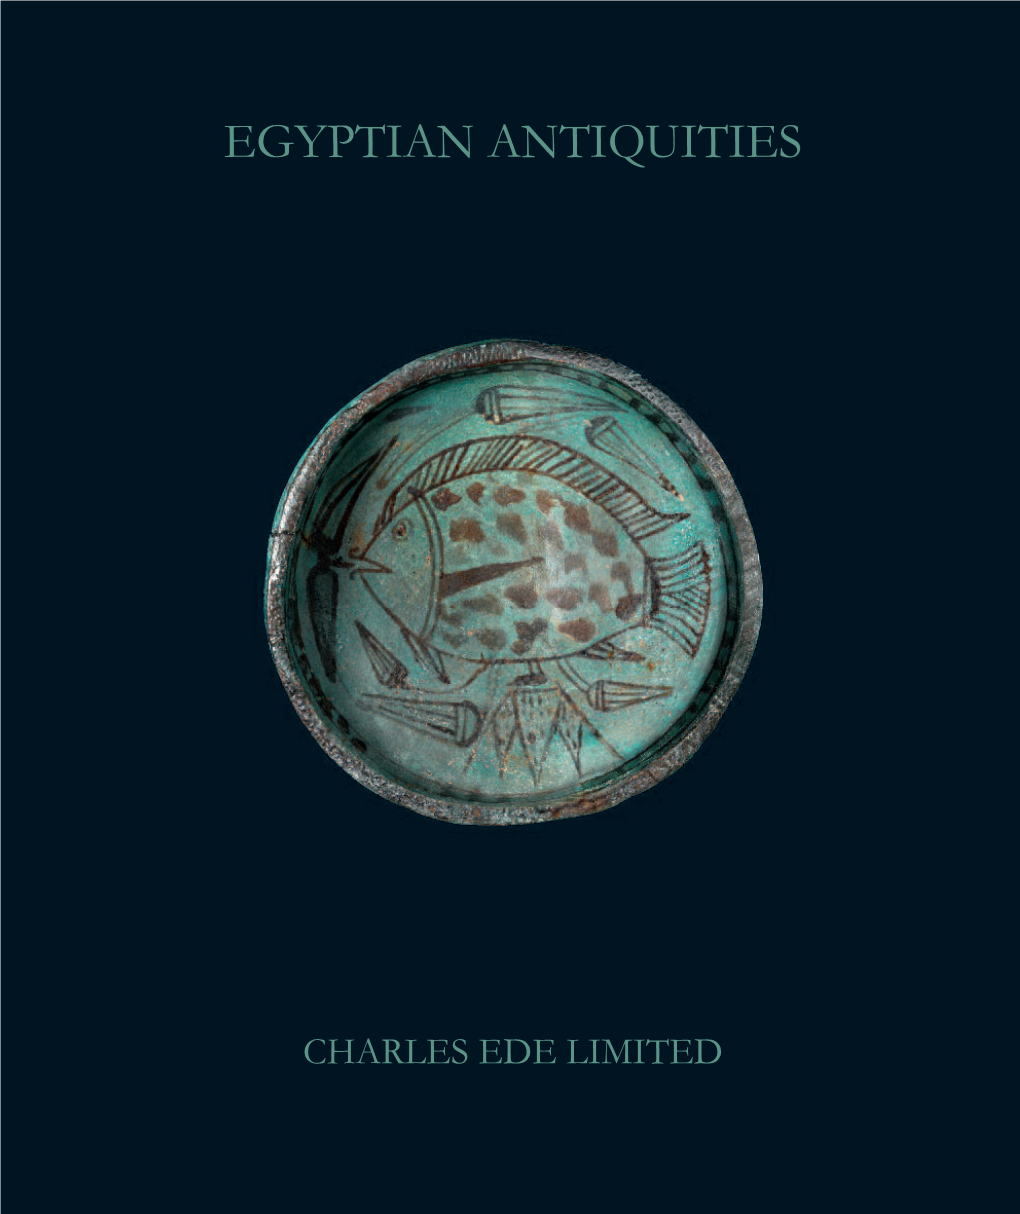 Egyptian Antiquities 2013 Egyptian Antiquities 2013